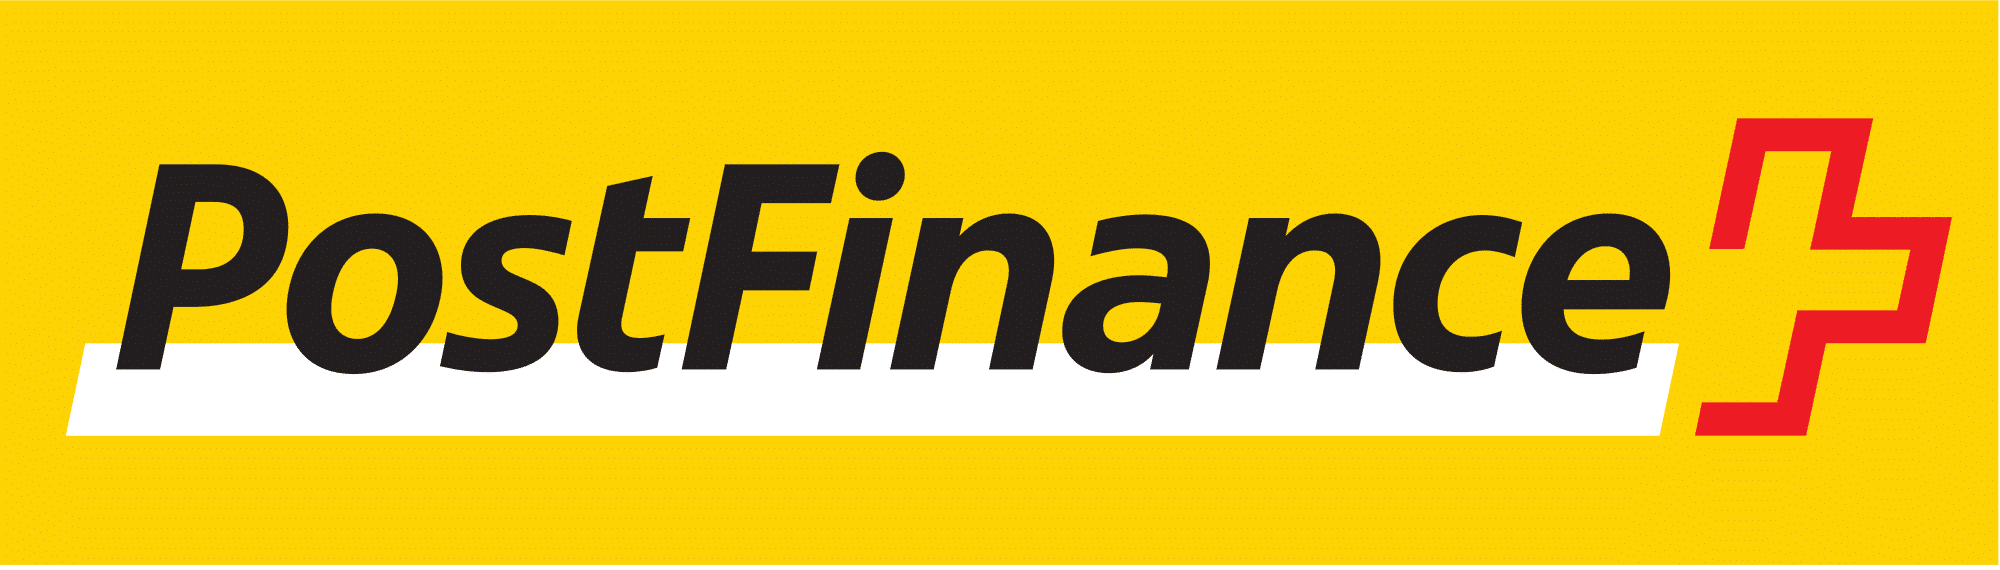 PostFinance_Logo